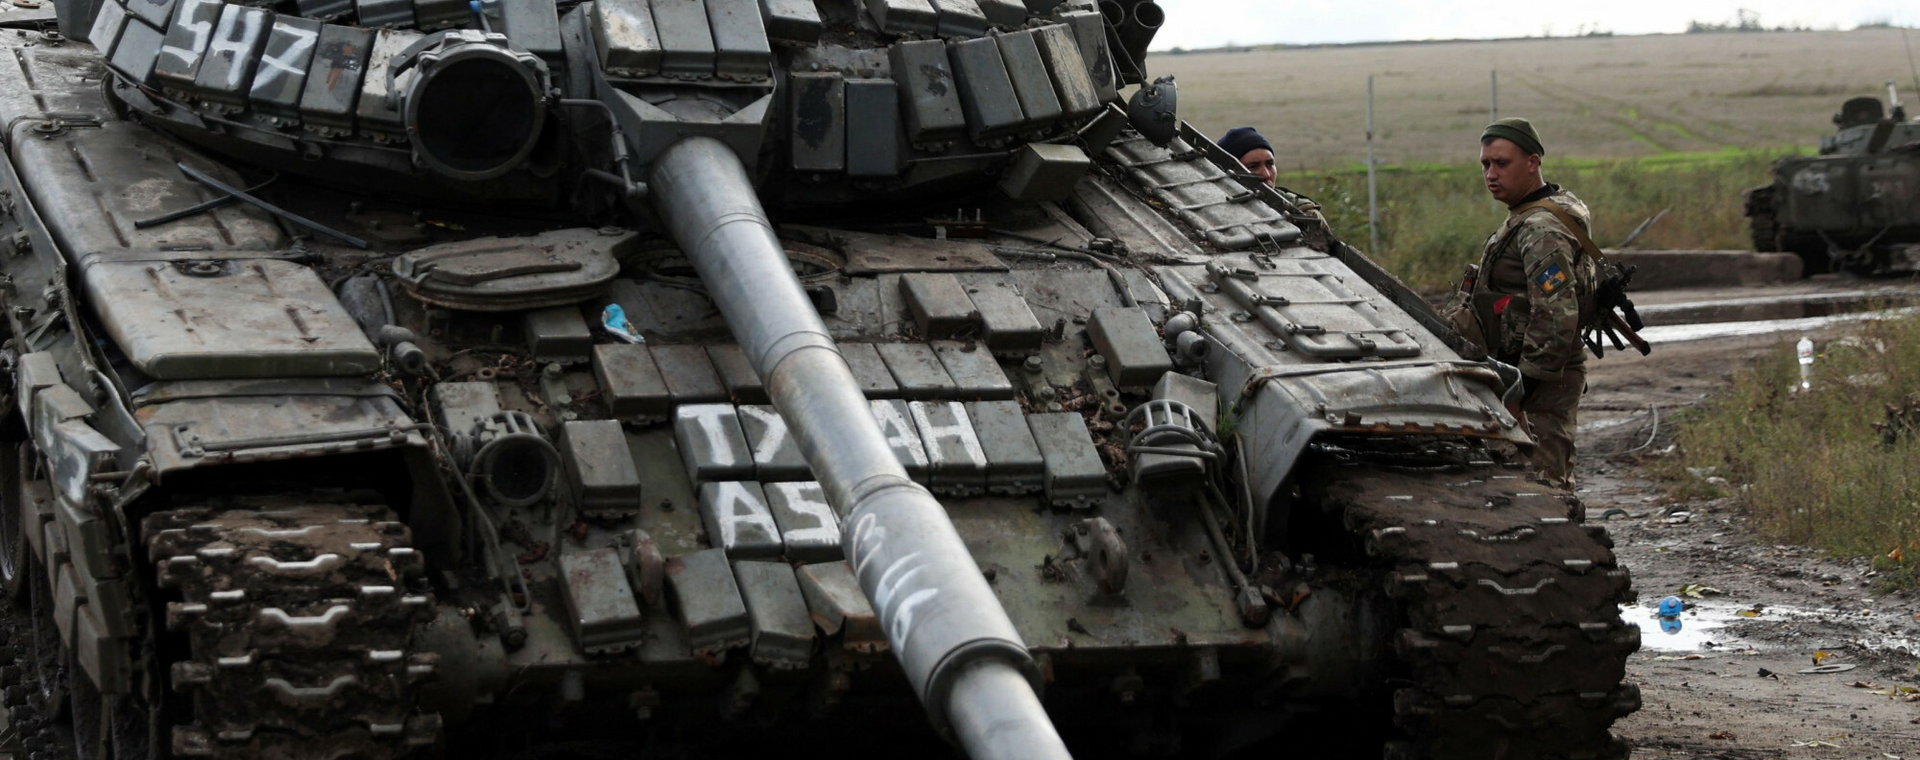 Ukraińcy ładują rosyjski czołg T-72 na ciężarówkę za miastem Izium